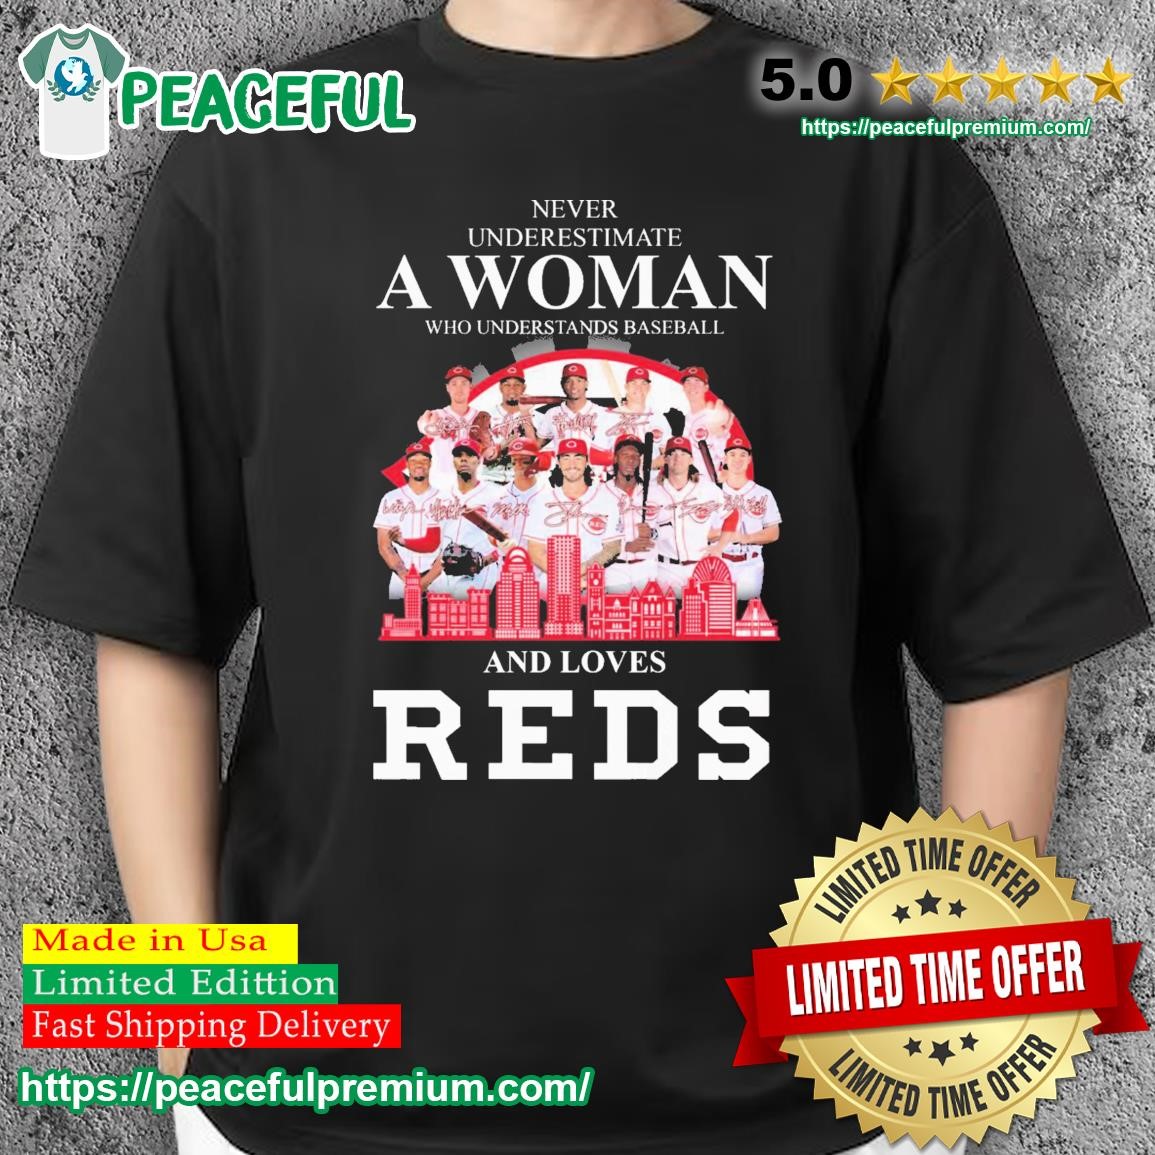 Never underestimate a woman who understands baseball Cincinnati Reds shirt